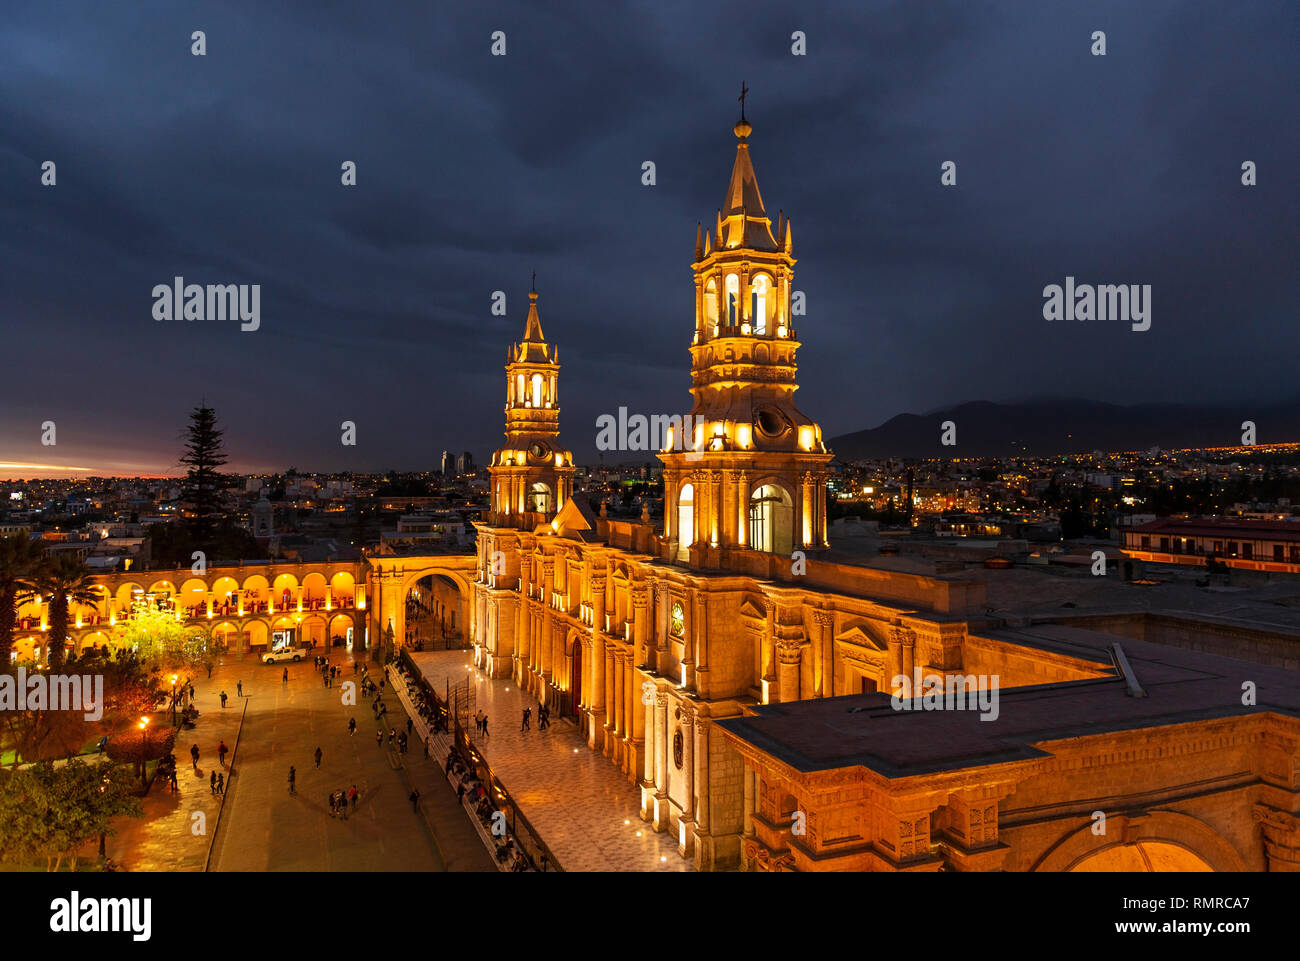 La città di Arequipa dopo il tramonto con il duomo illuminato e la Plaza de Armas piazza principale, Perù. Foto Stock